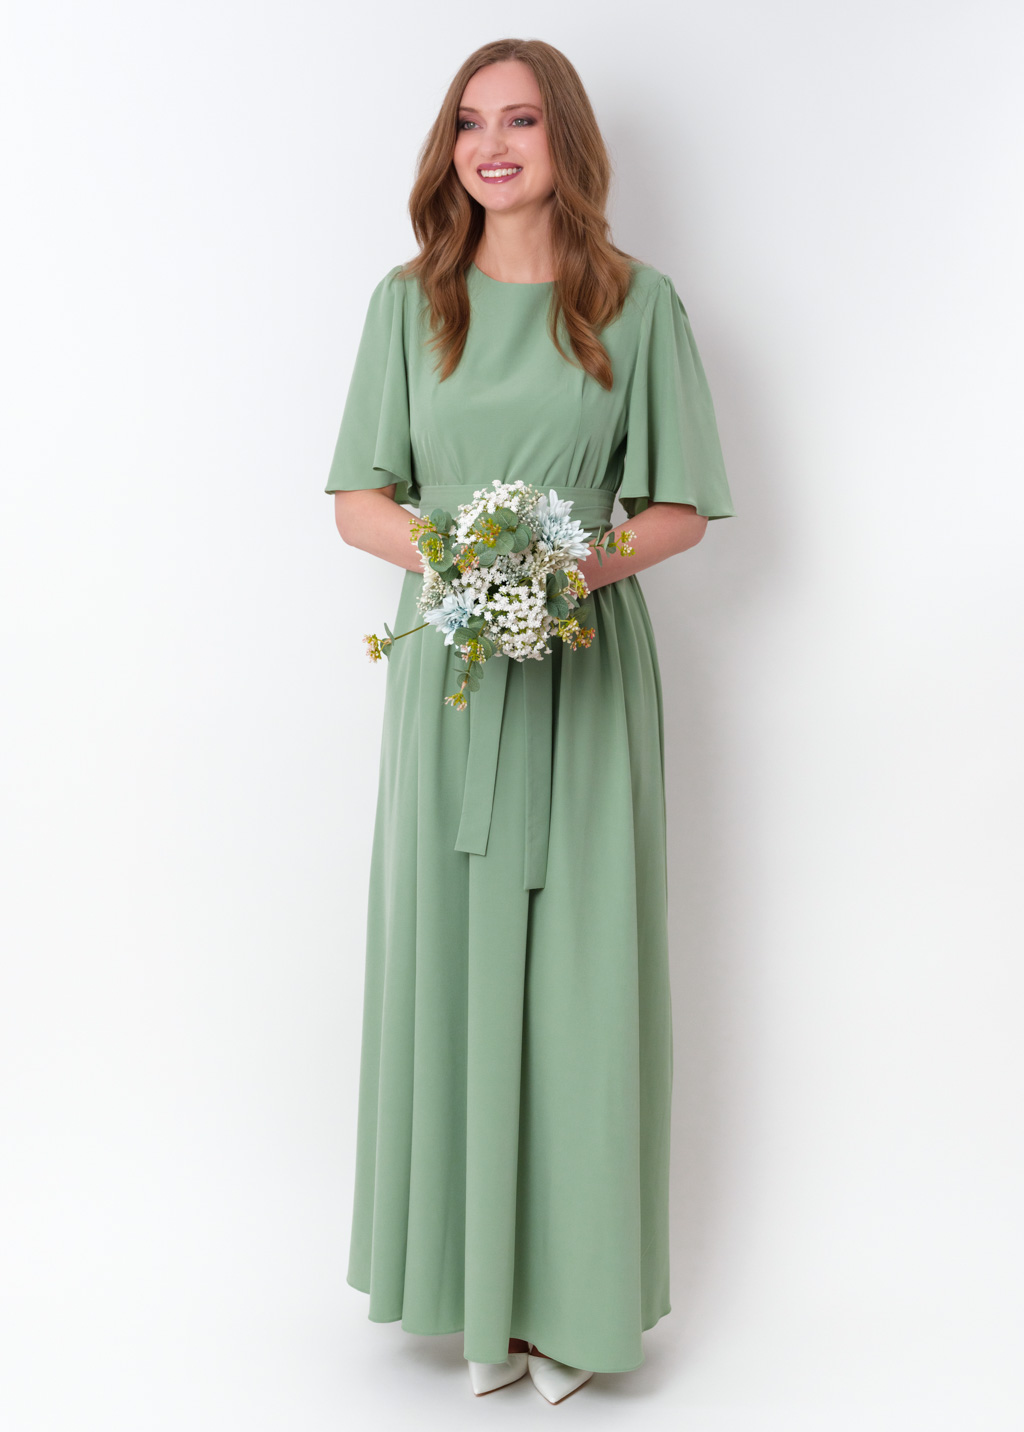 Sage green long slit dress with belt